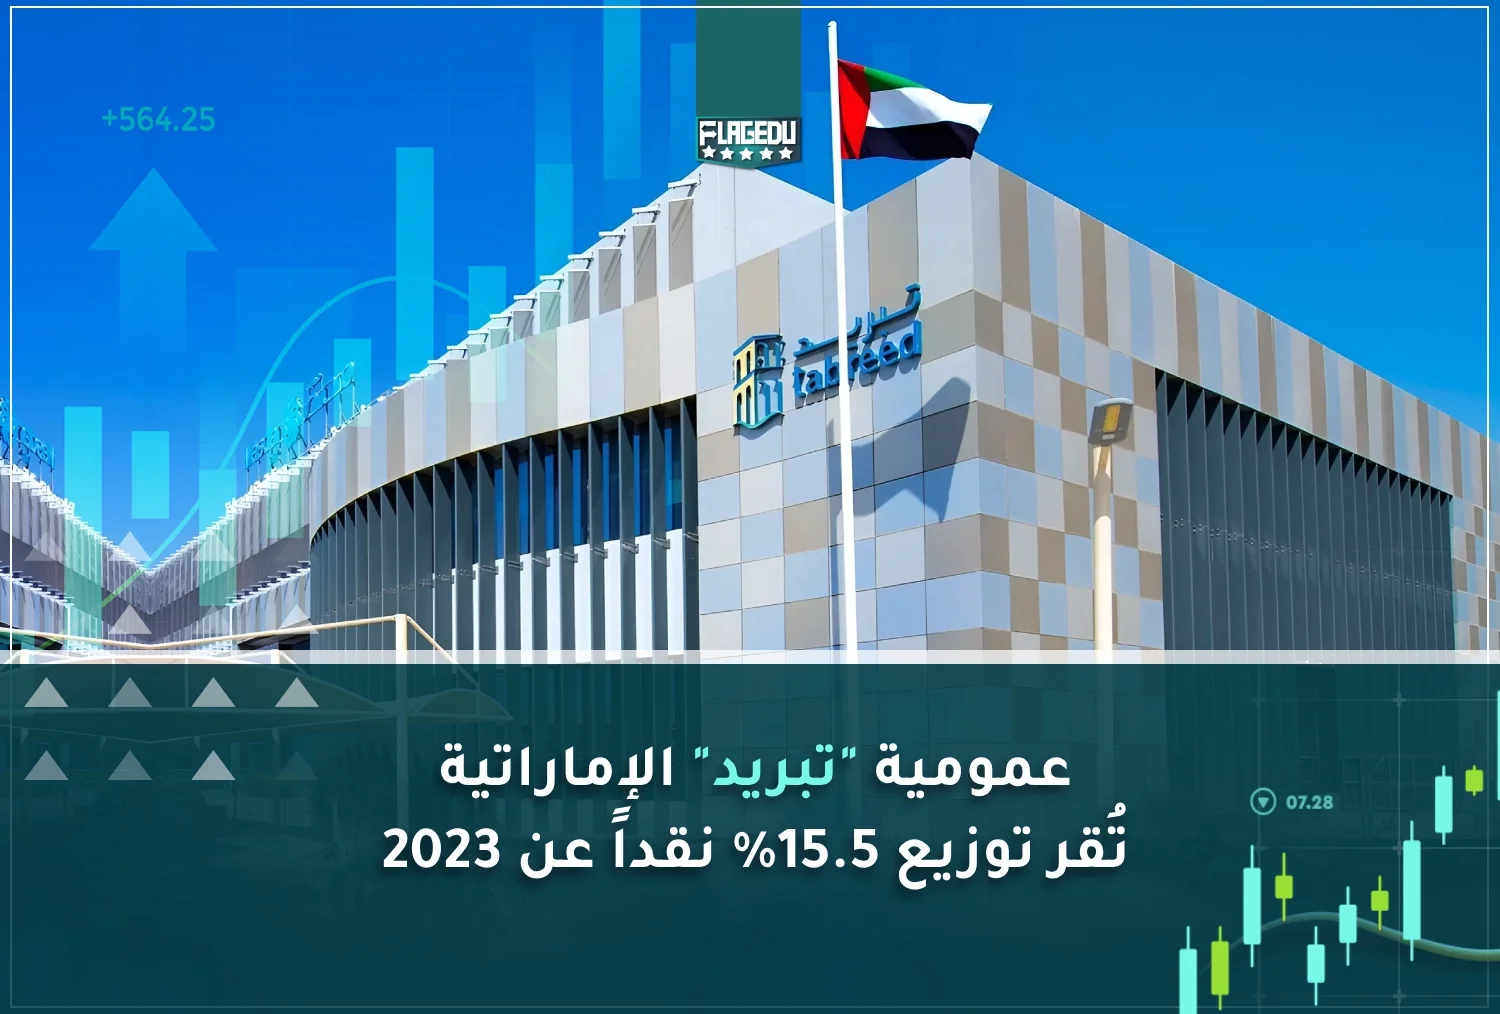 عمومية تبريد الإماراتية  تُقر توزيع 15.5% نقداً عن 2023